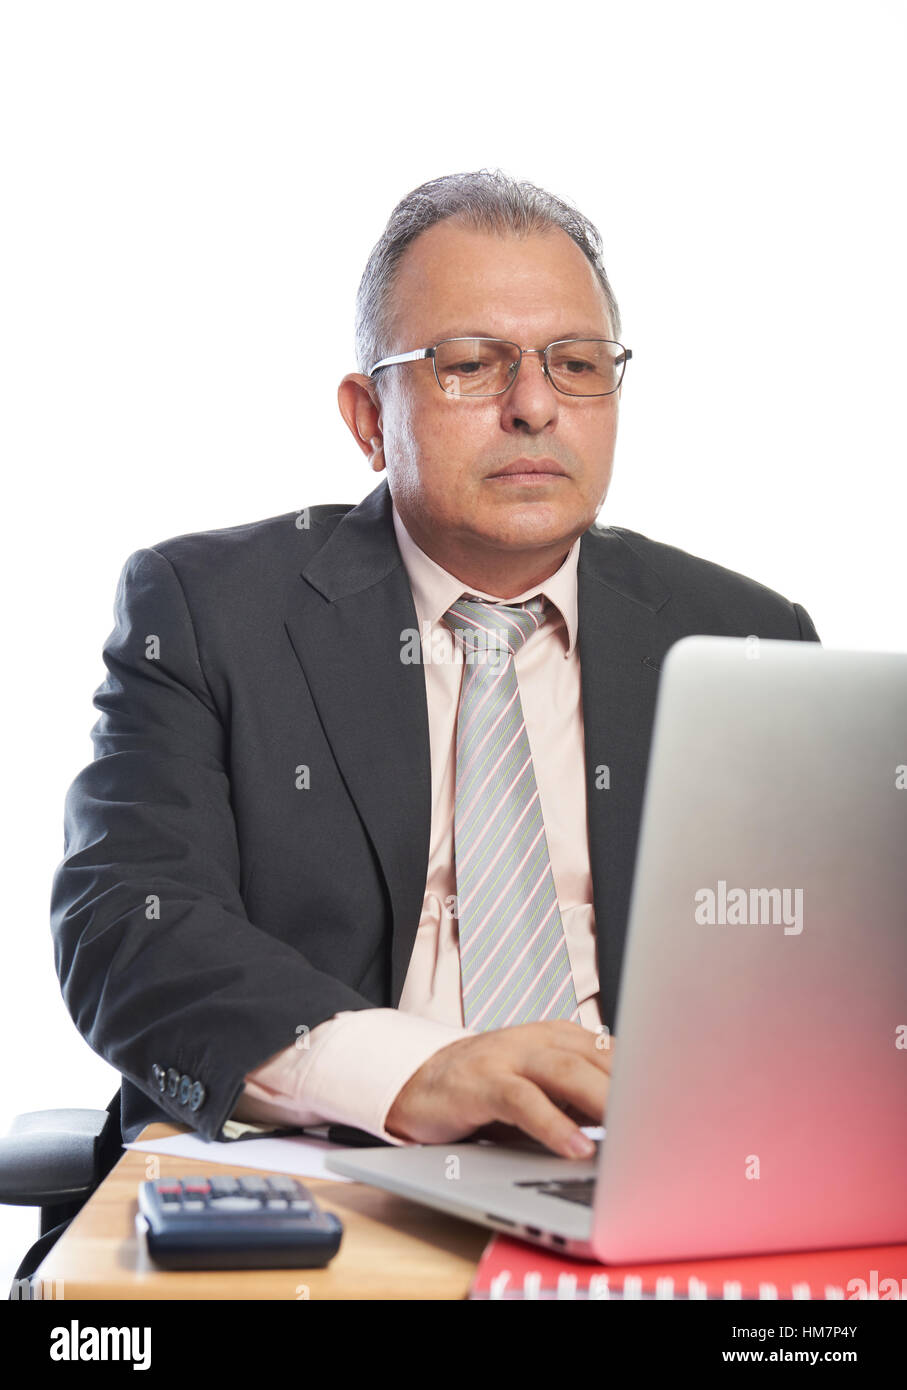 L'Homme à lunettes travailler sur ordinateur portable isolé sur fond blanc Banque D'Images